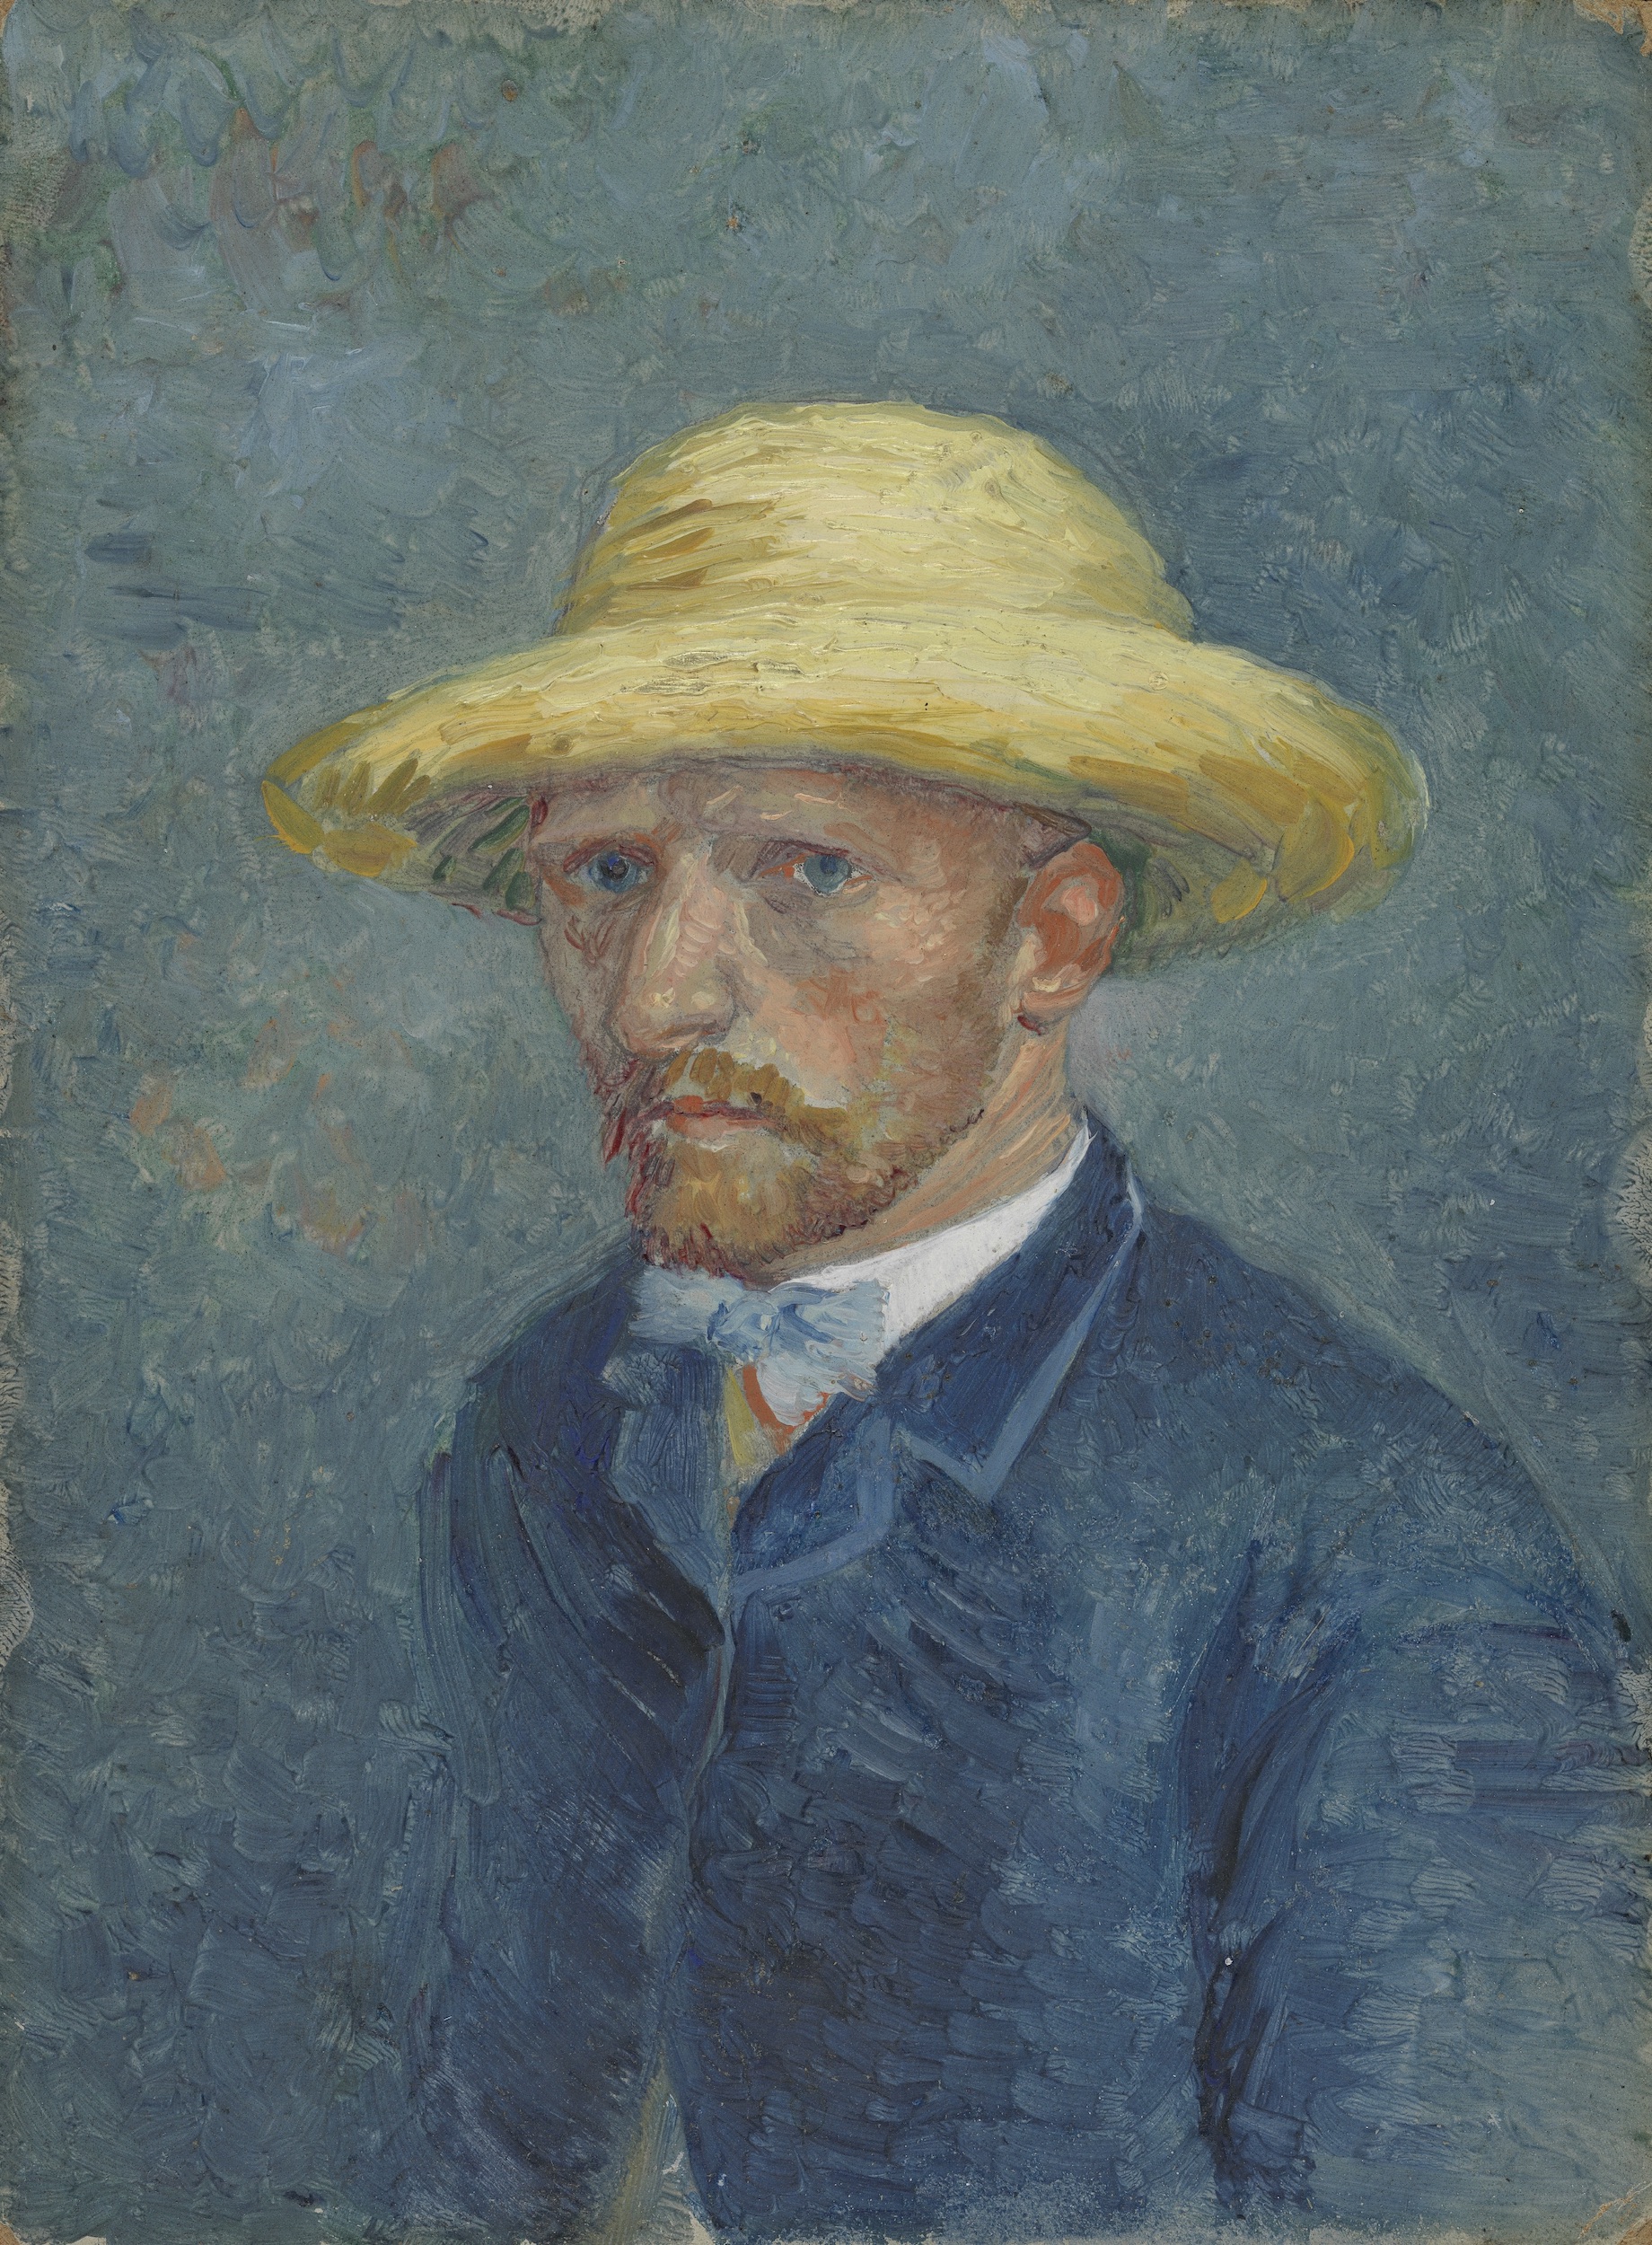 테오 반 고흐의 초상화(Self-Portrait or Portrait of Theo van Gogh) by 빈센트 반 고흐 - 1887년 여름 - 19 cm x 14.1 cm 